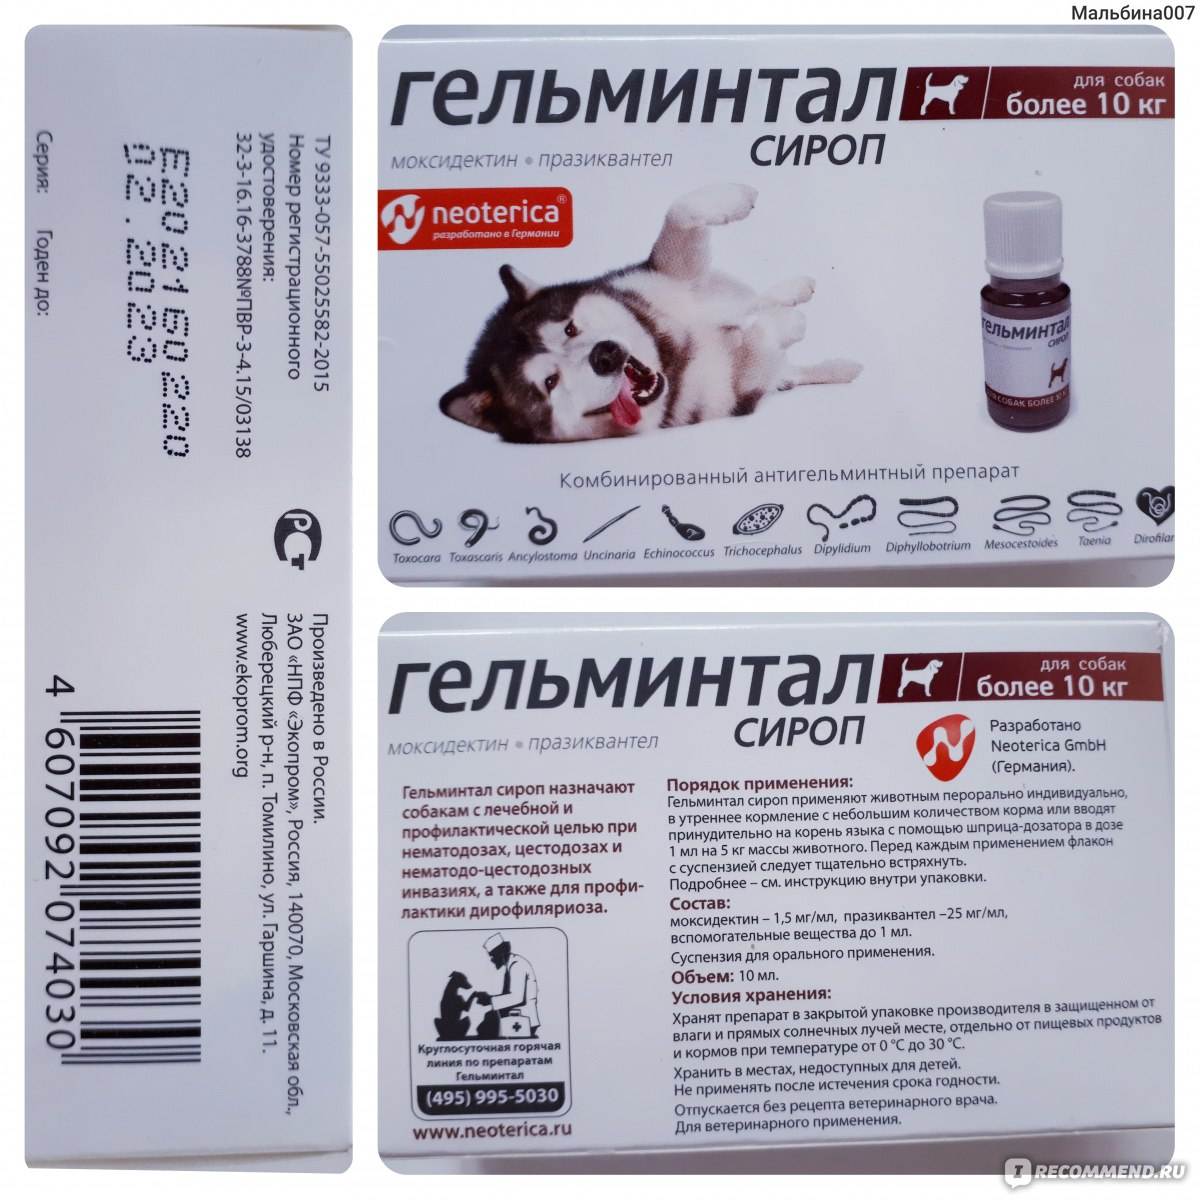 Гельминтал (капли) для кошек и собак | отзывы о применении препаратов для животных от ветеринаров и заводчиков